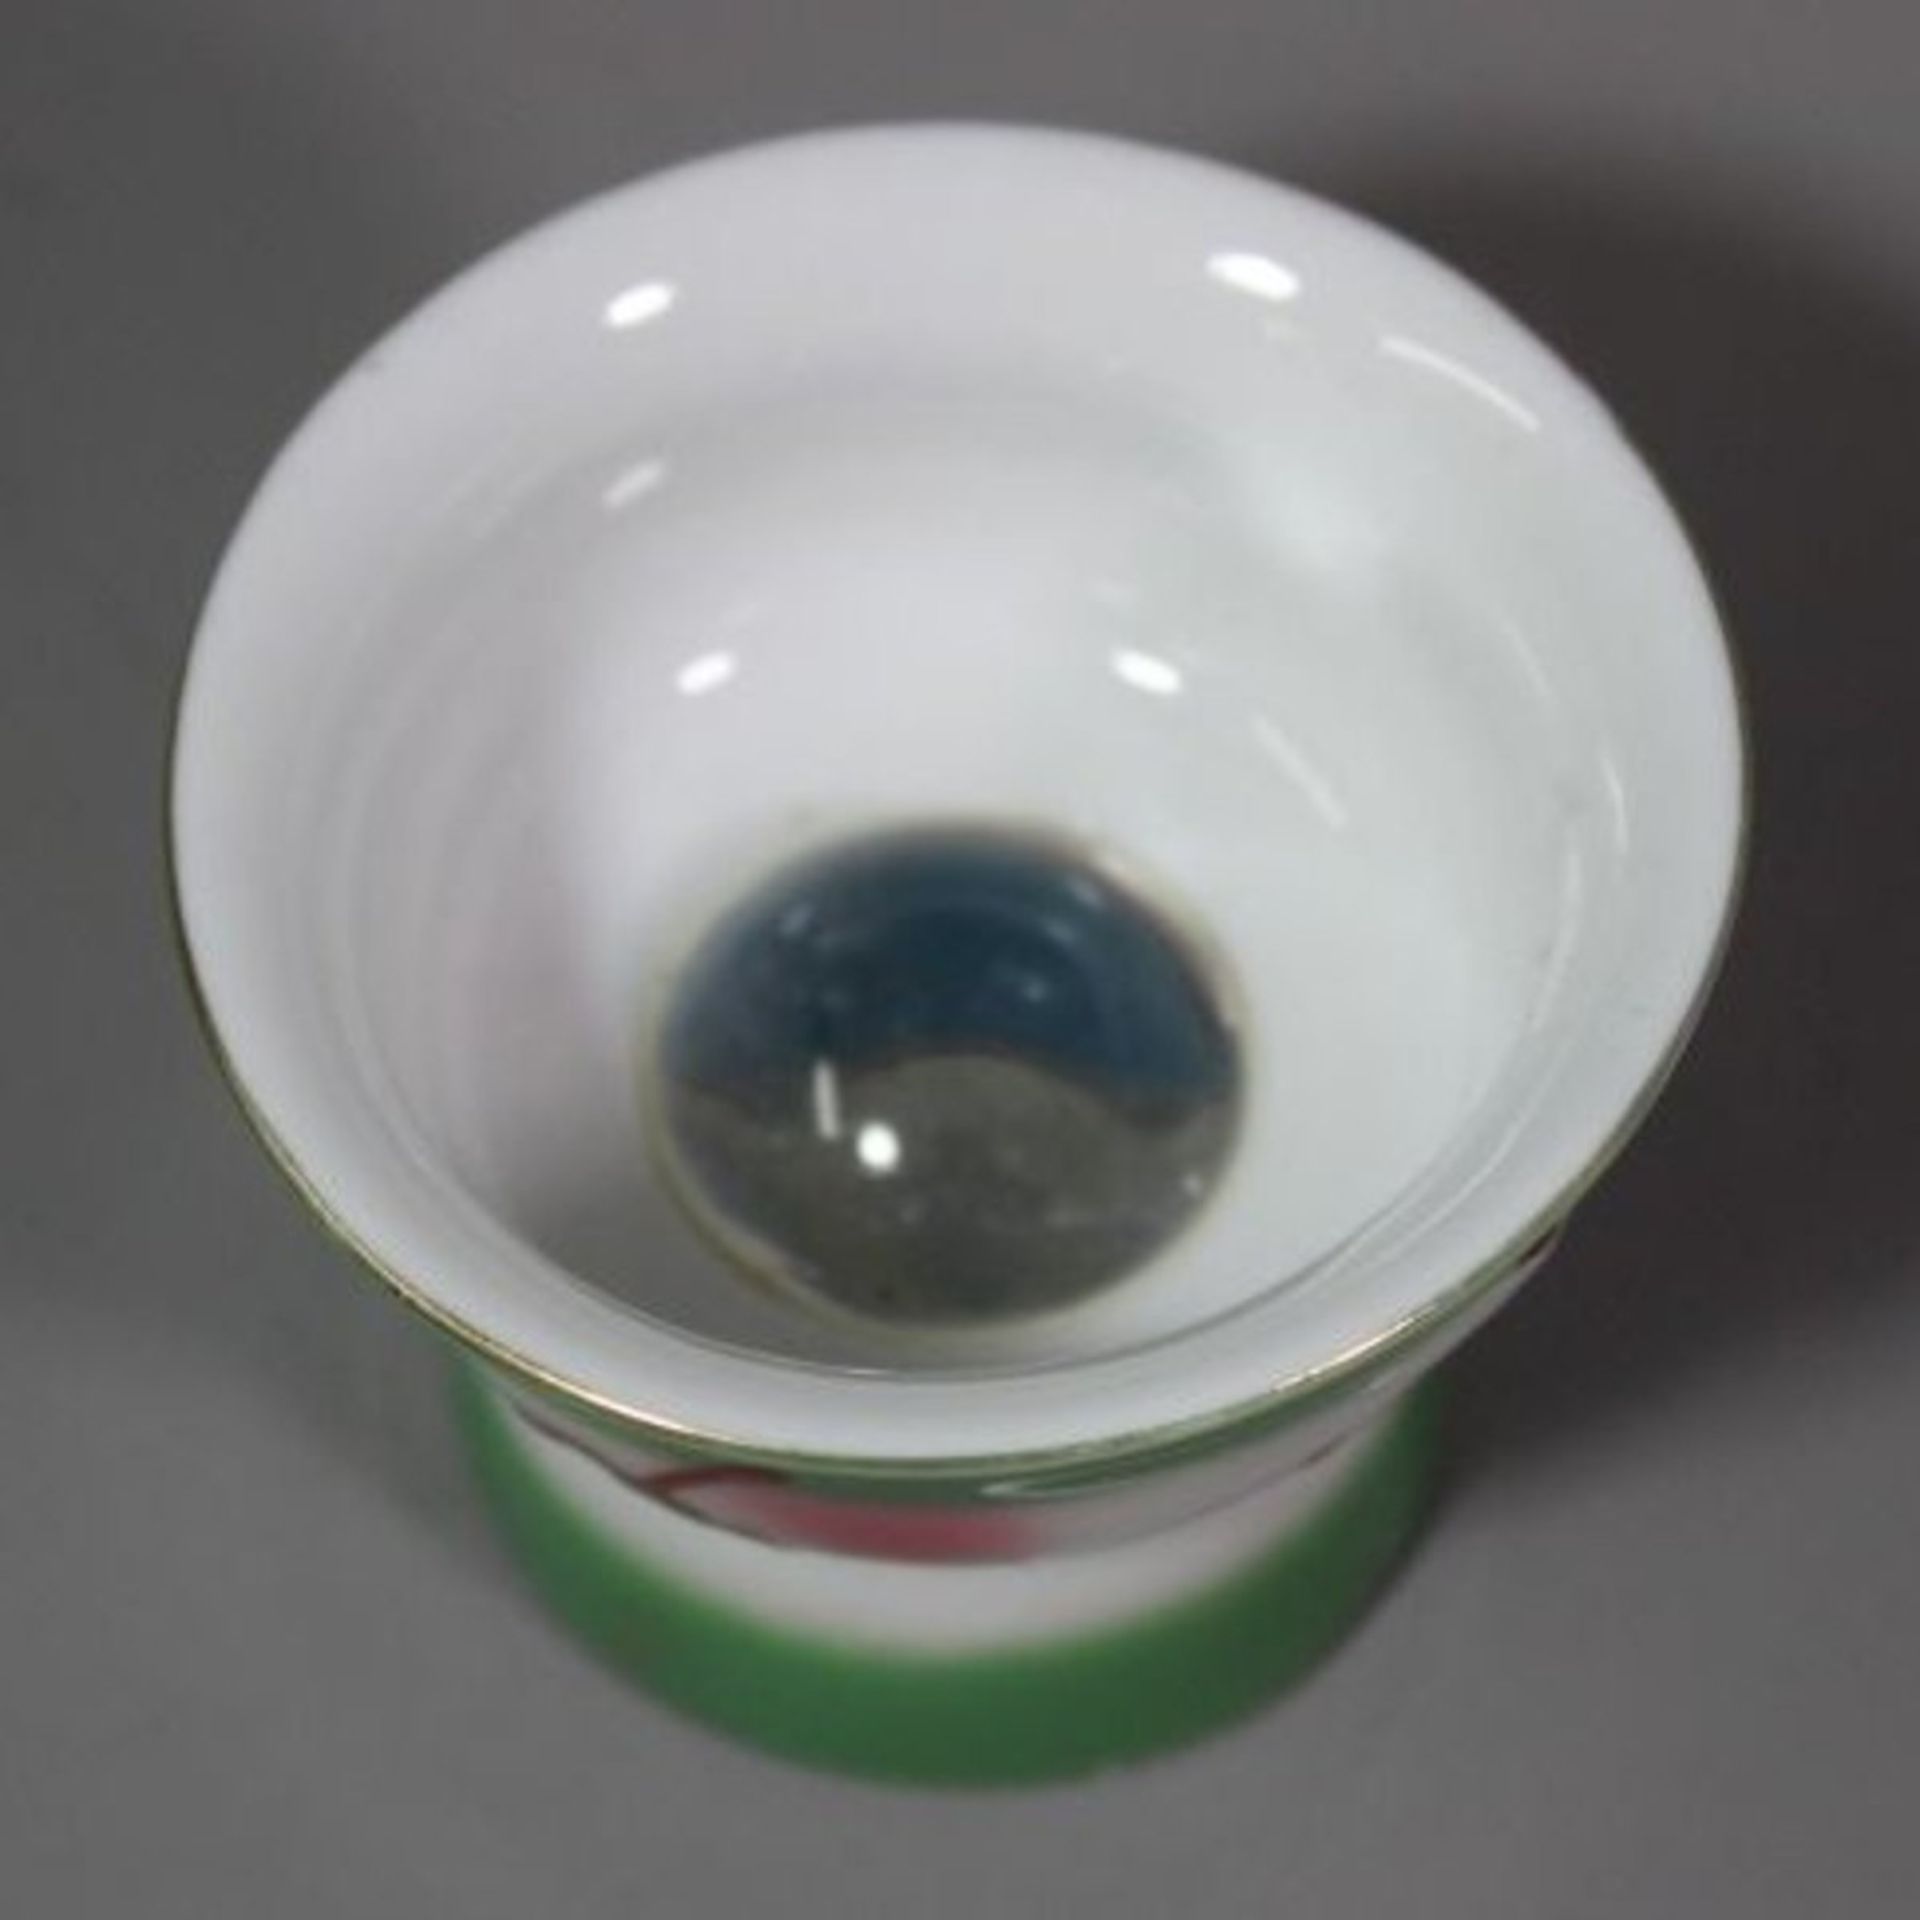 6x Sake-Becher mit Lupenglas, erotische Darstellungen, 1x Boden fehlt, wohl 60/70er Jahre, H-4,5cm. - Image 4 of 6